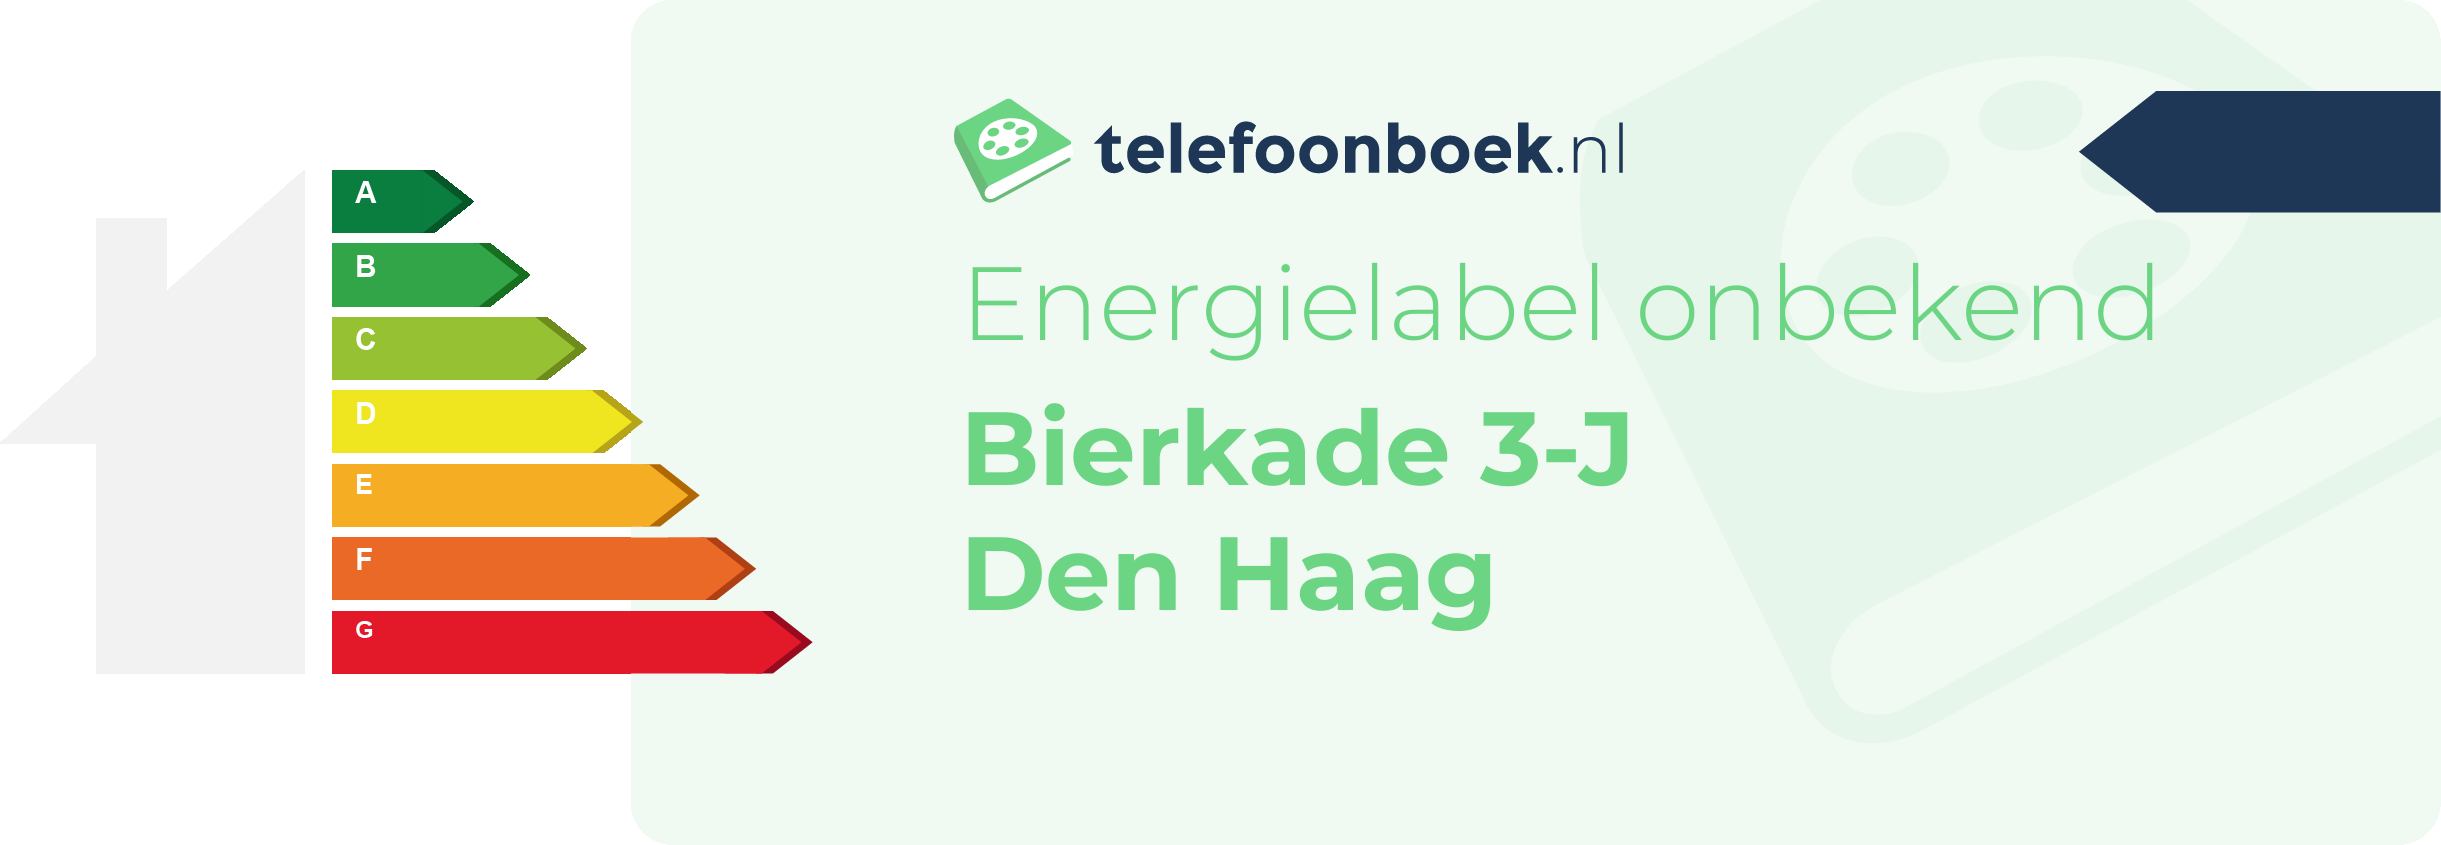 Energielabel Bierkade 3-J Den Haag